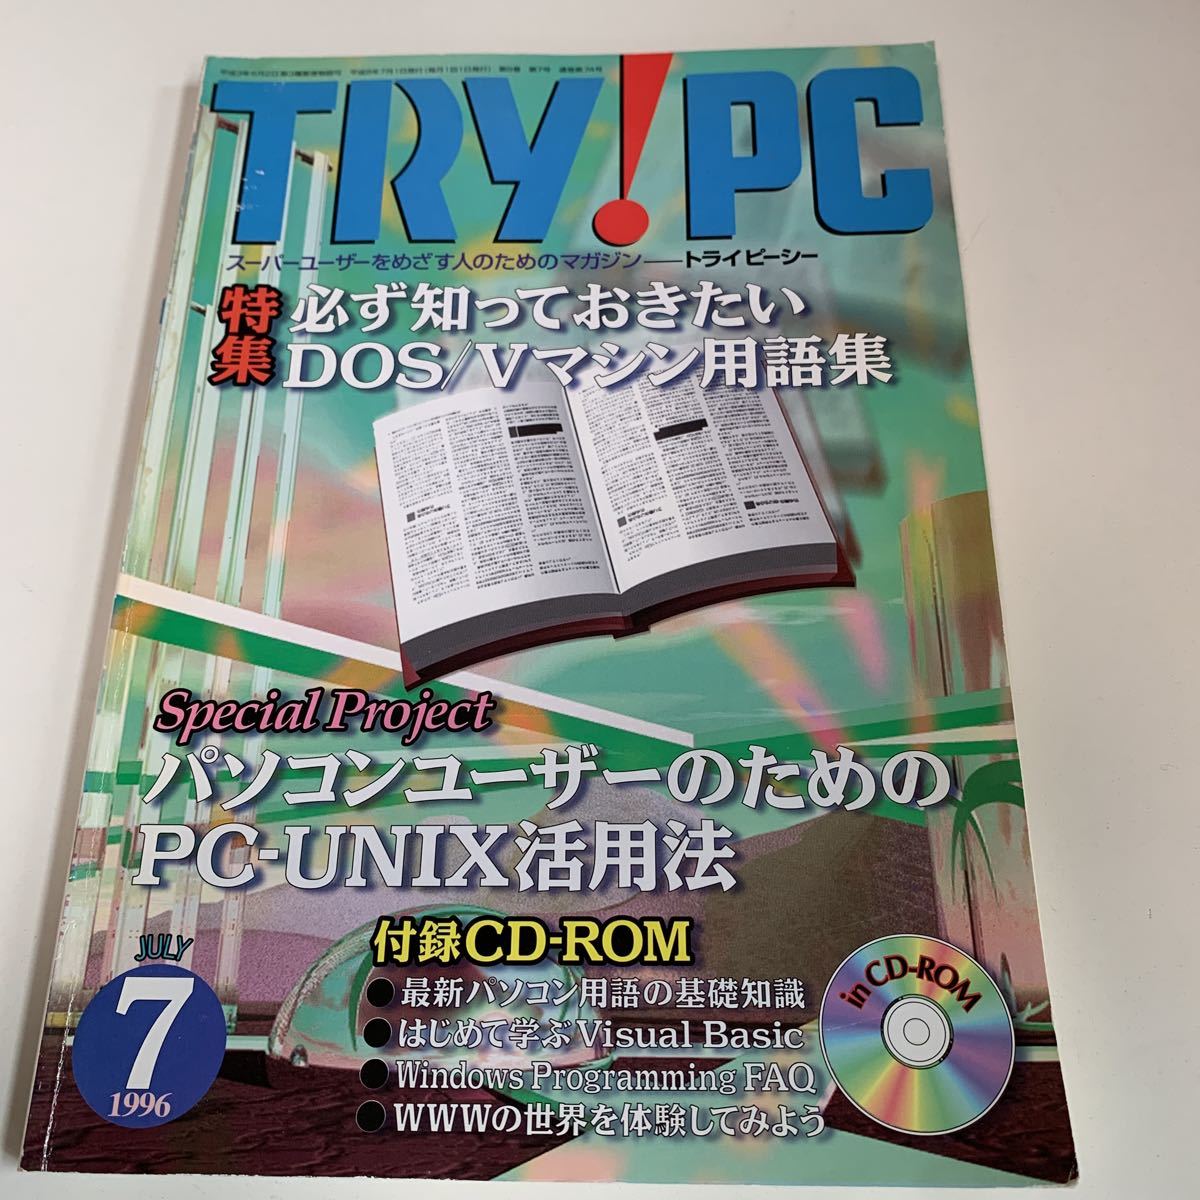 yh79@ TRY PC トライピーシー スーパーユーザー ネットワーク 1996年7月 パソコン初期 IT時代 AtoZ 付録無し パソコン技術 プログラミング_画像1